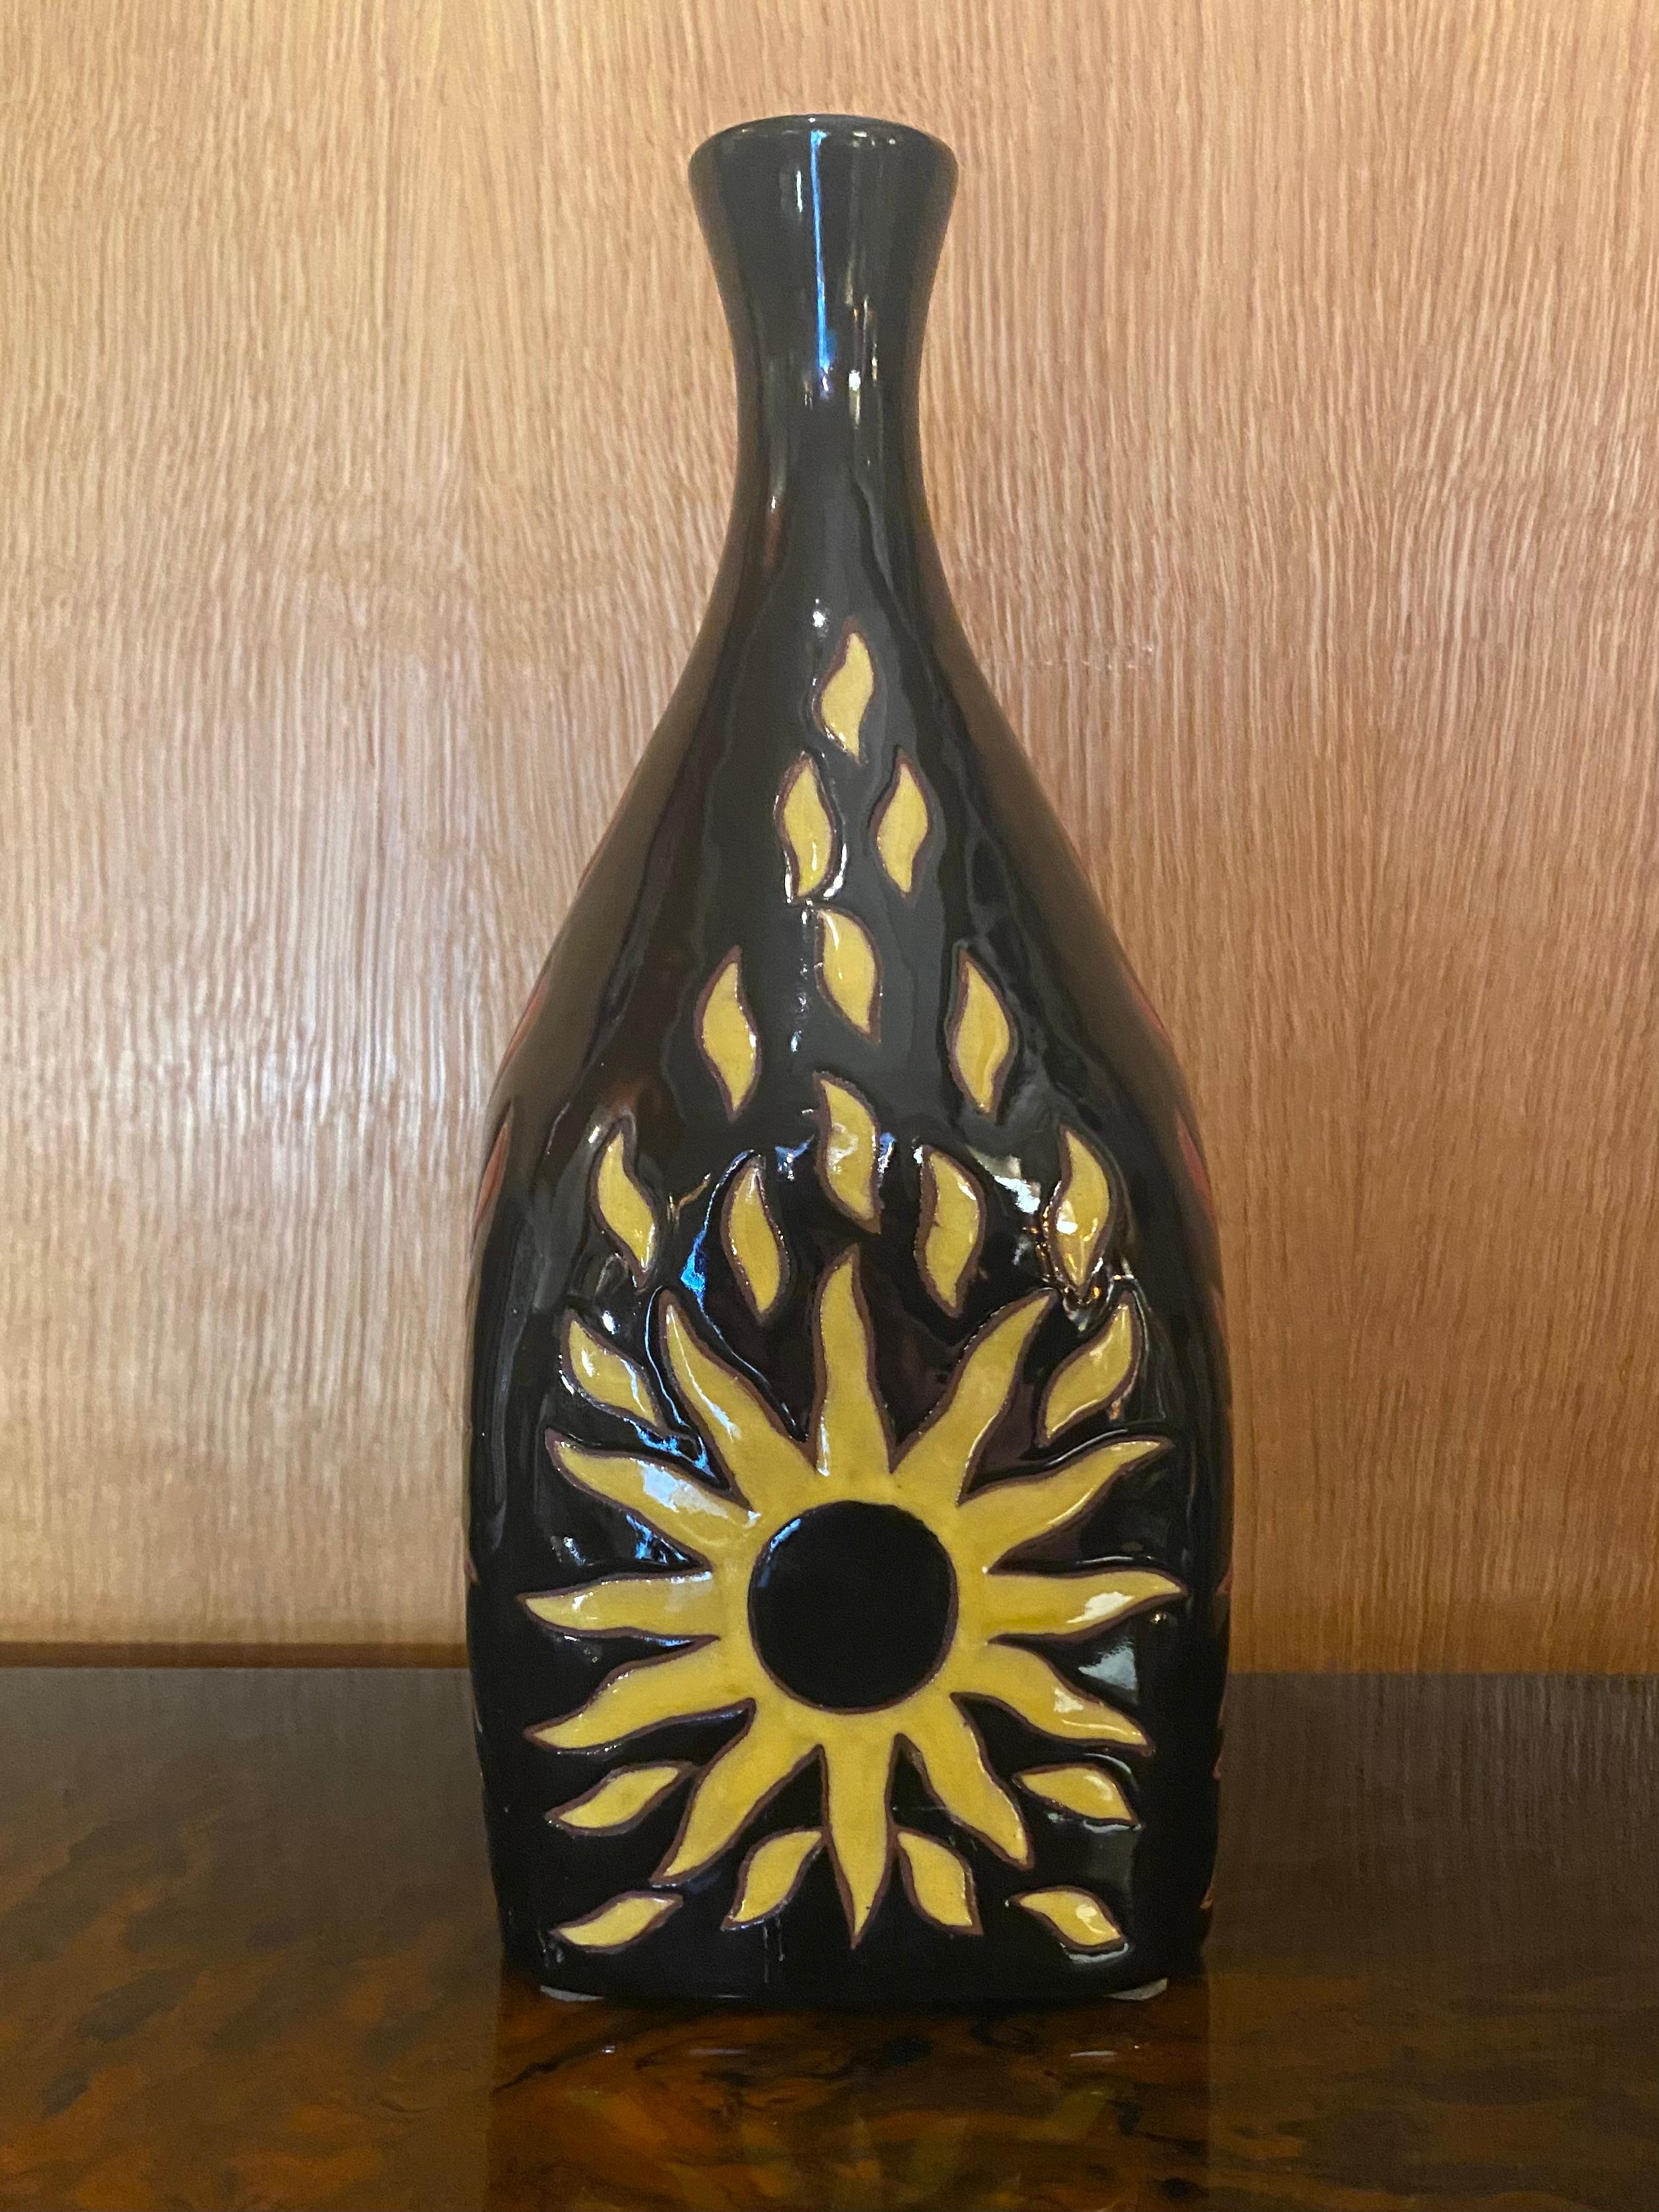 Ceramic Bottle by Jean Picart Le Doux, Sant Vicens, France, 1960s.